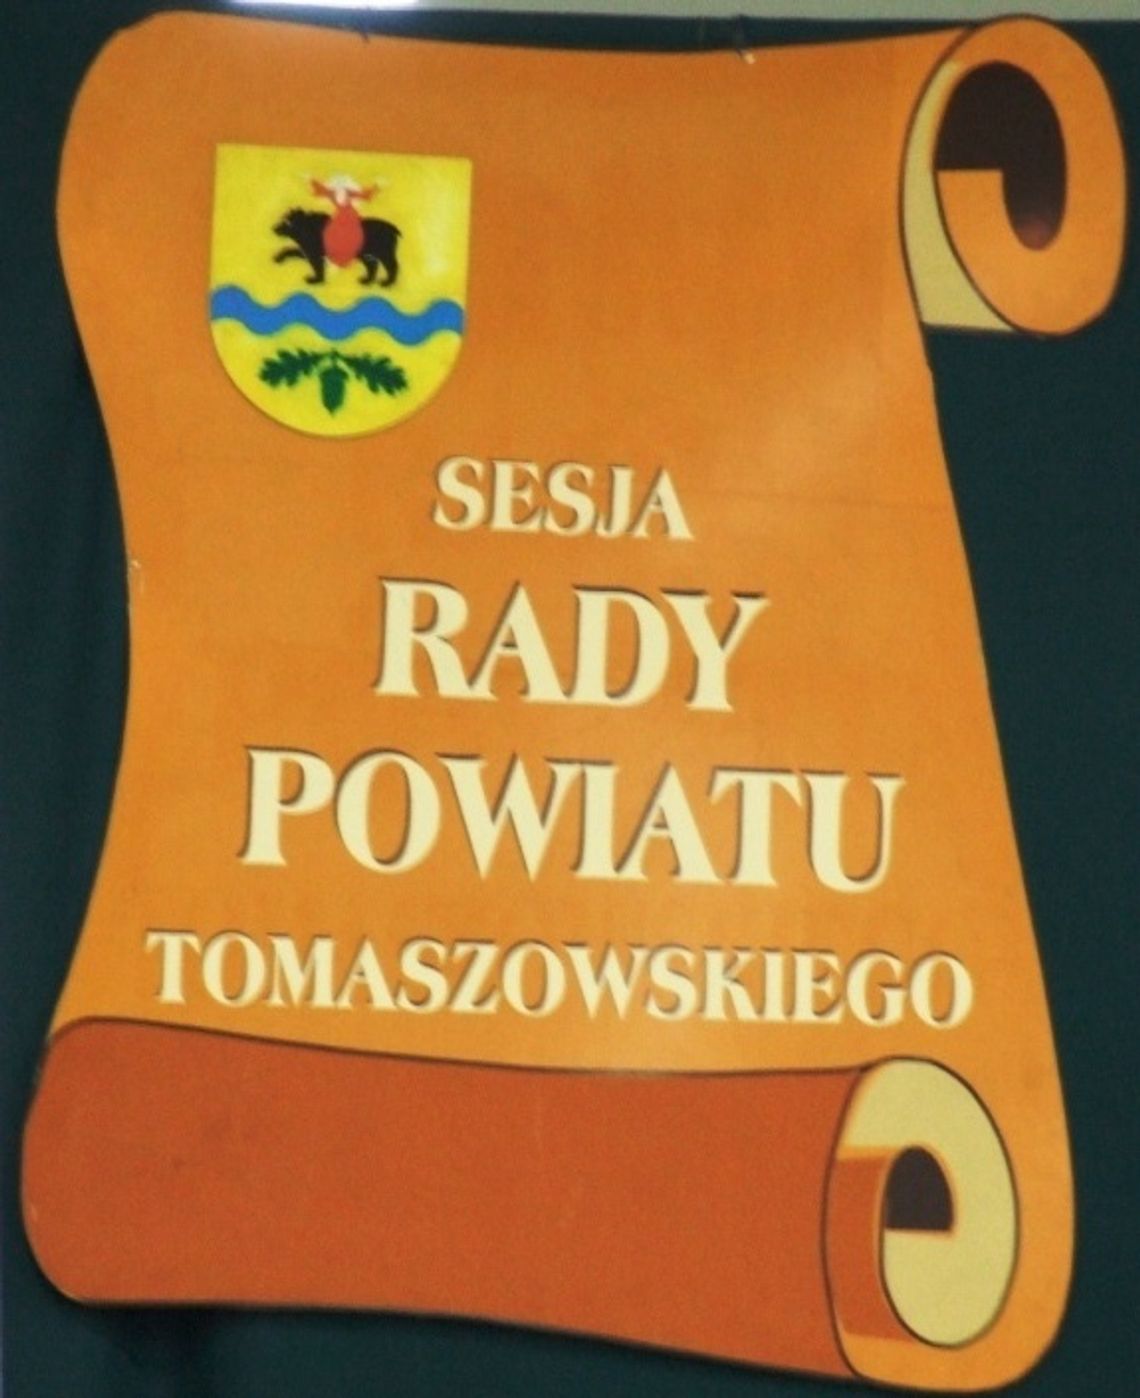 Sesja rady powiatu tomaszowskiego